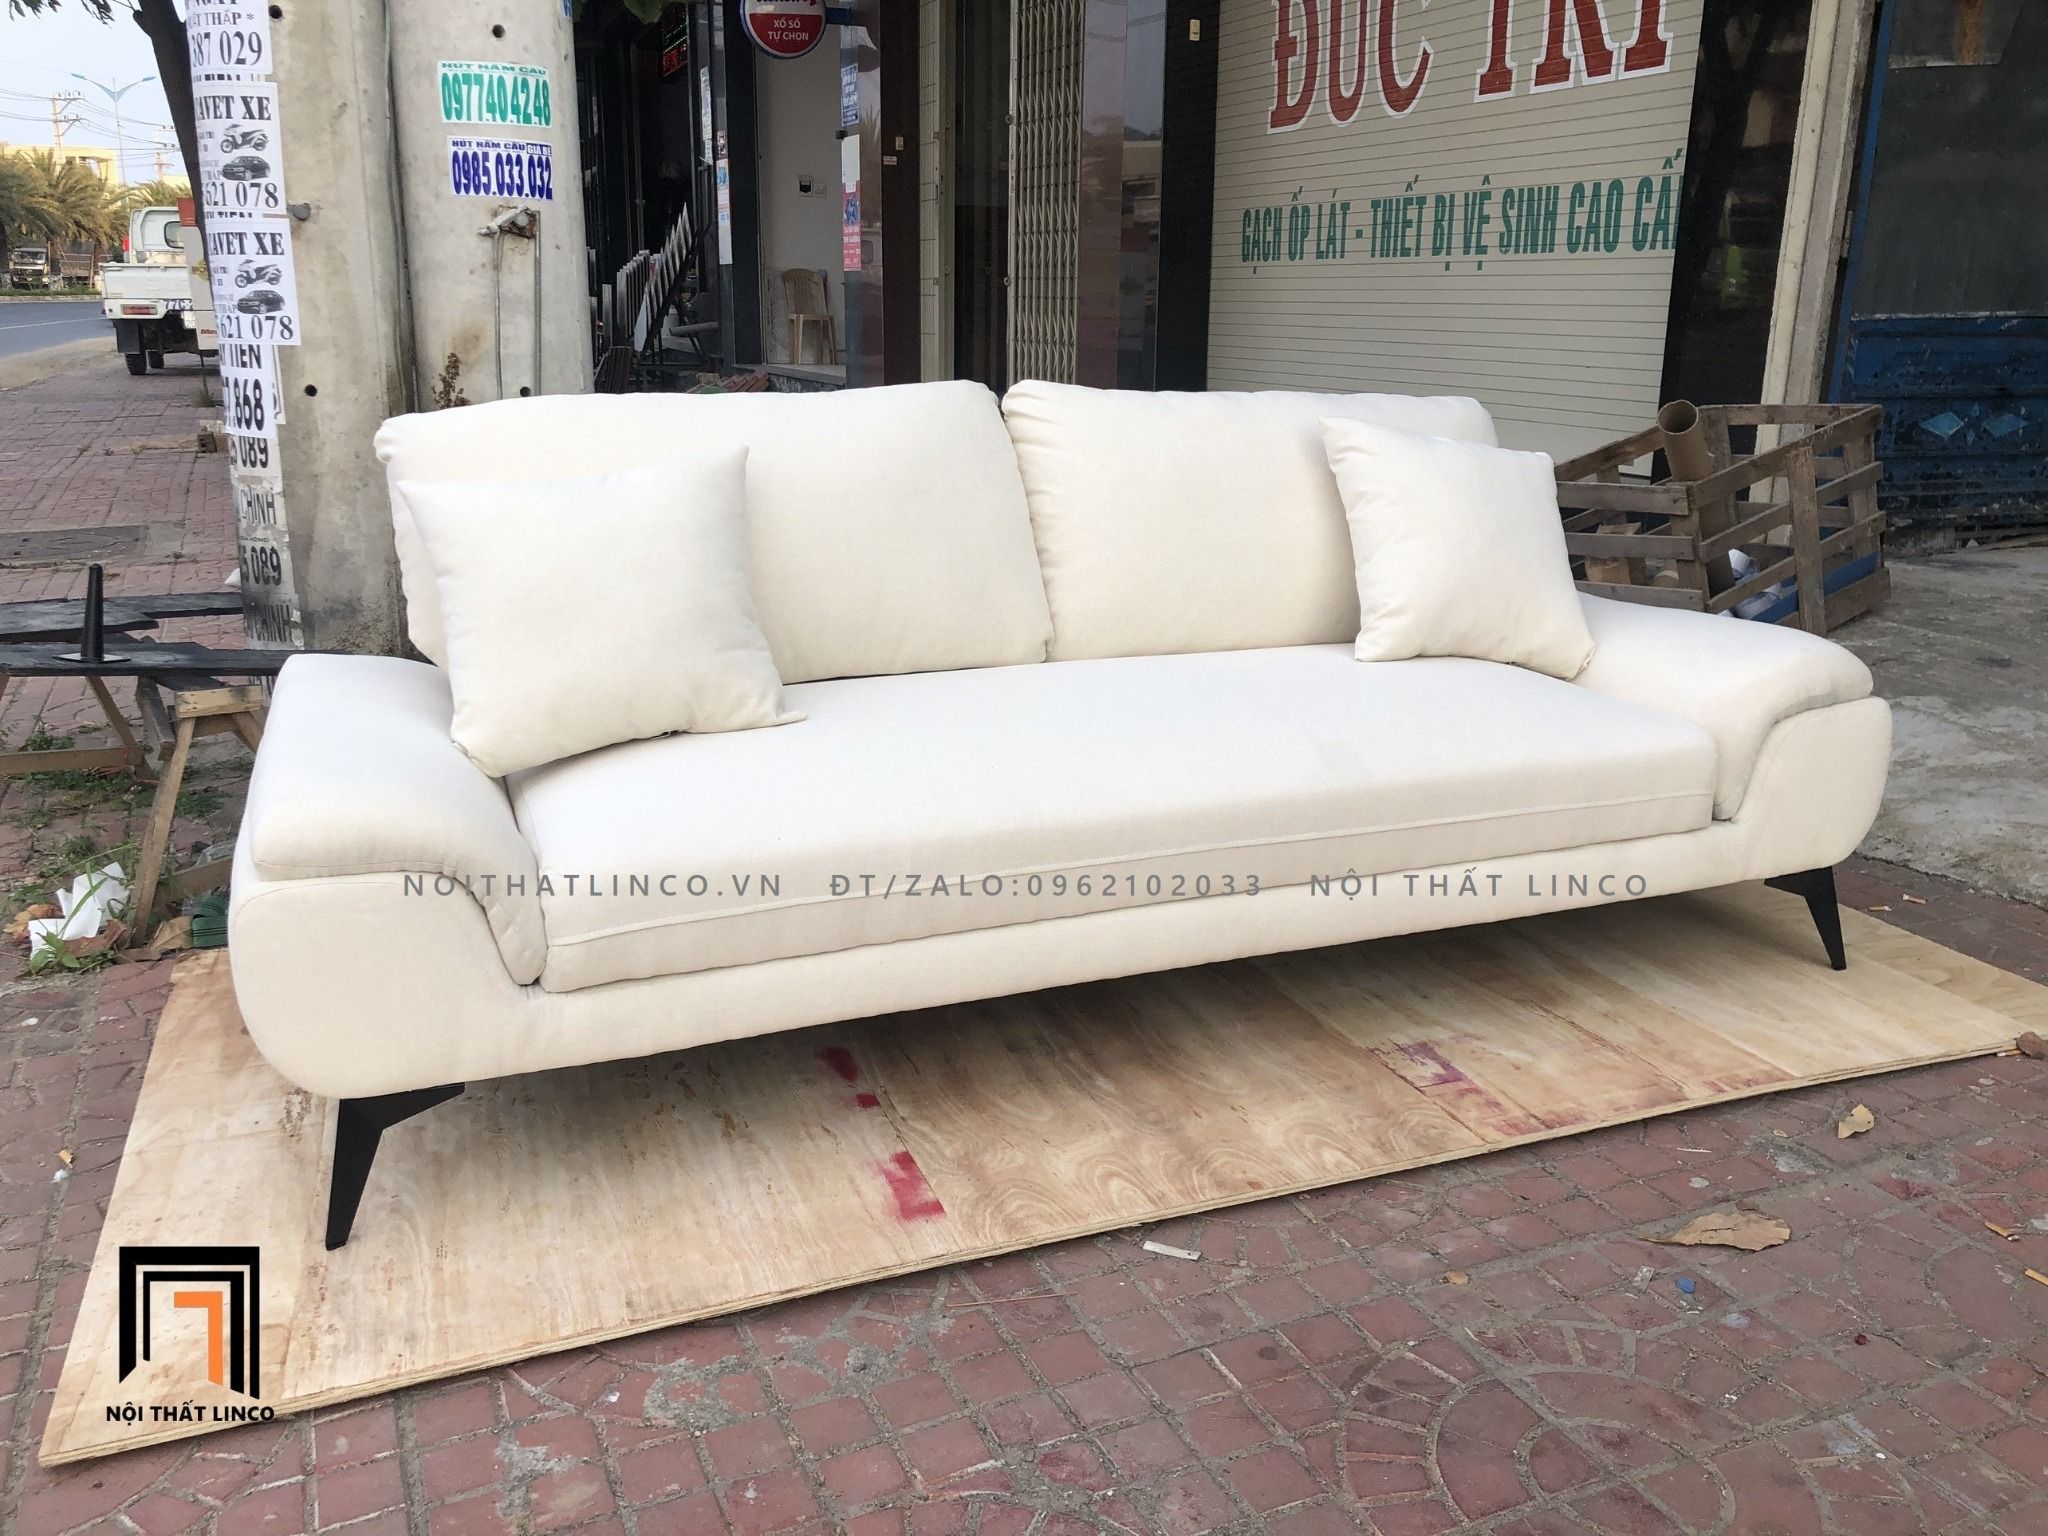  Ghế sofa băng dài 2m1 BT60 Creamy màu trắng kem sang trọng 